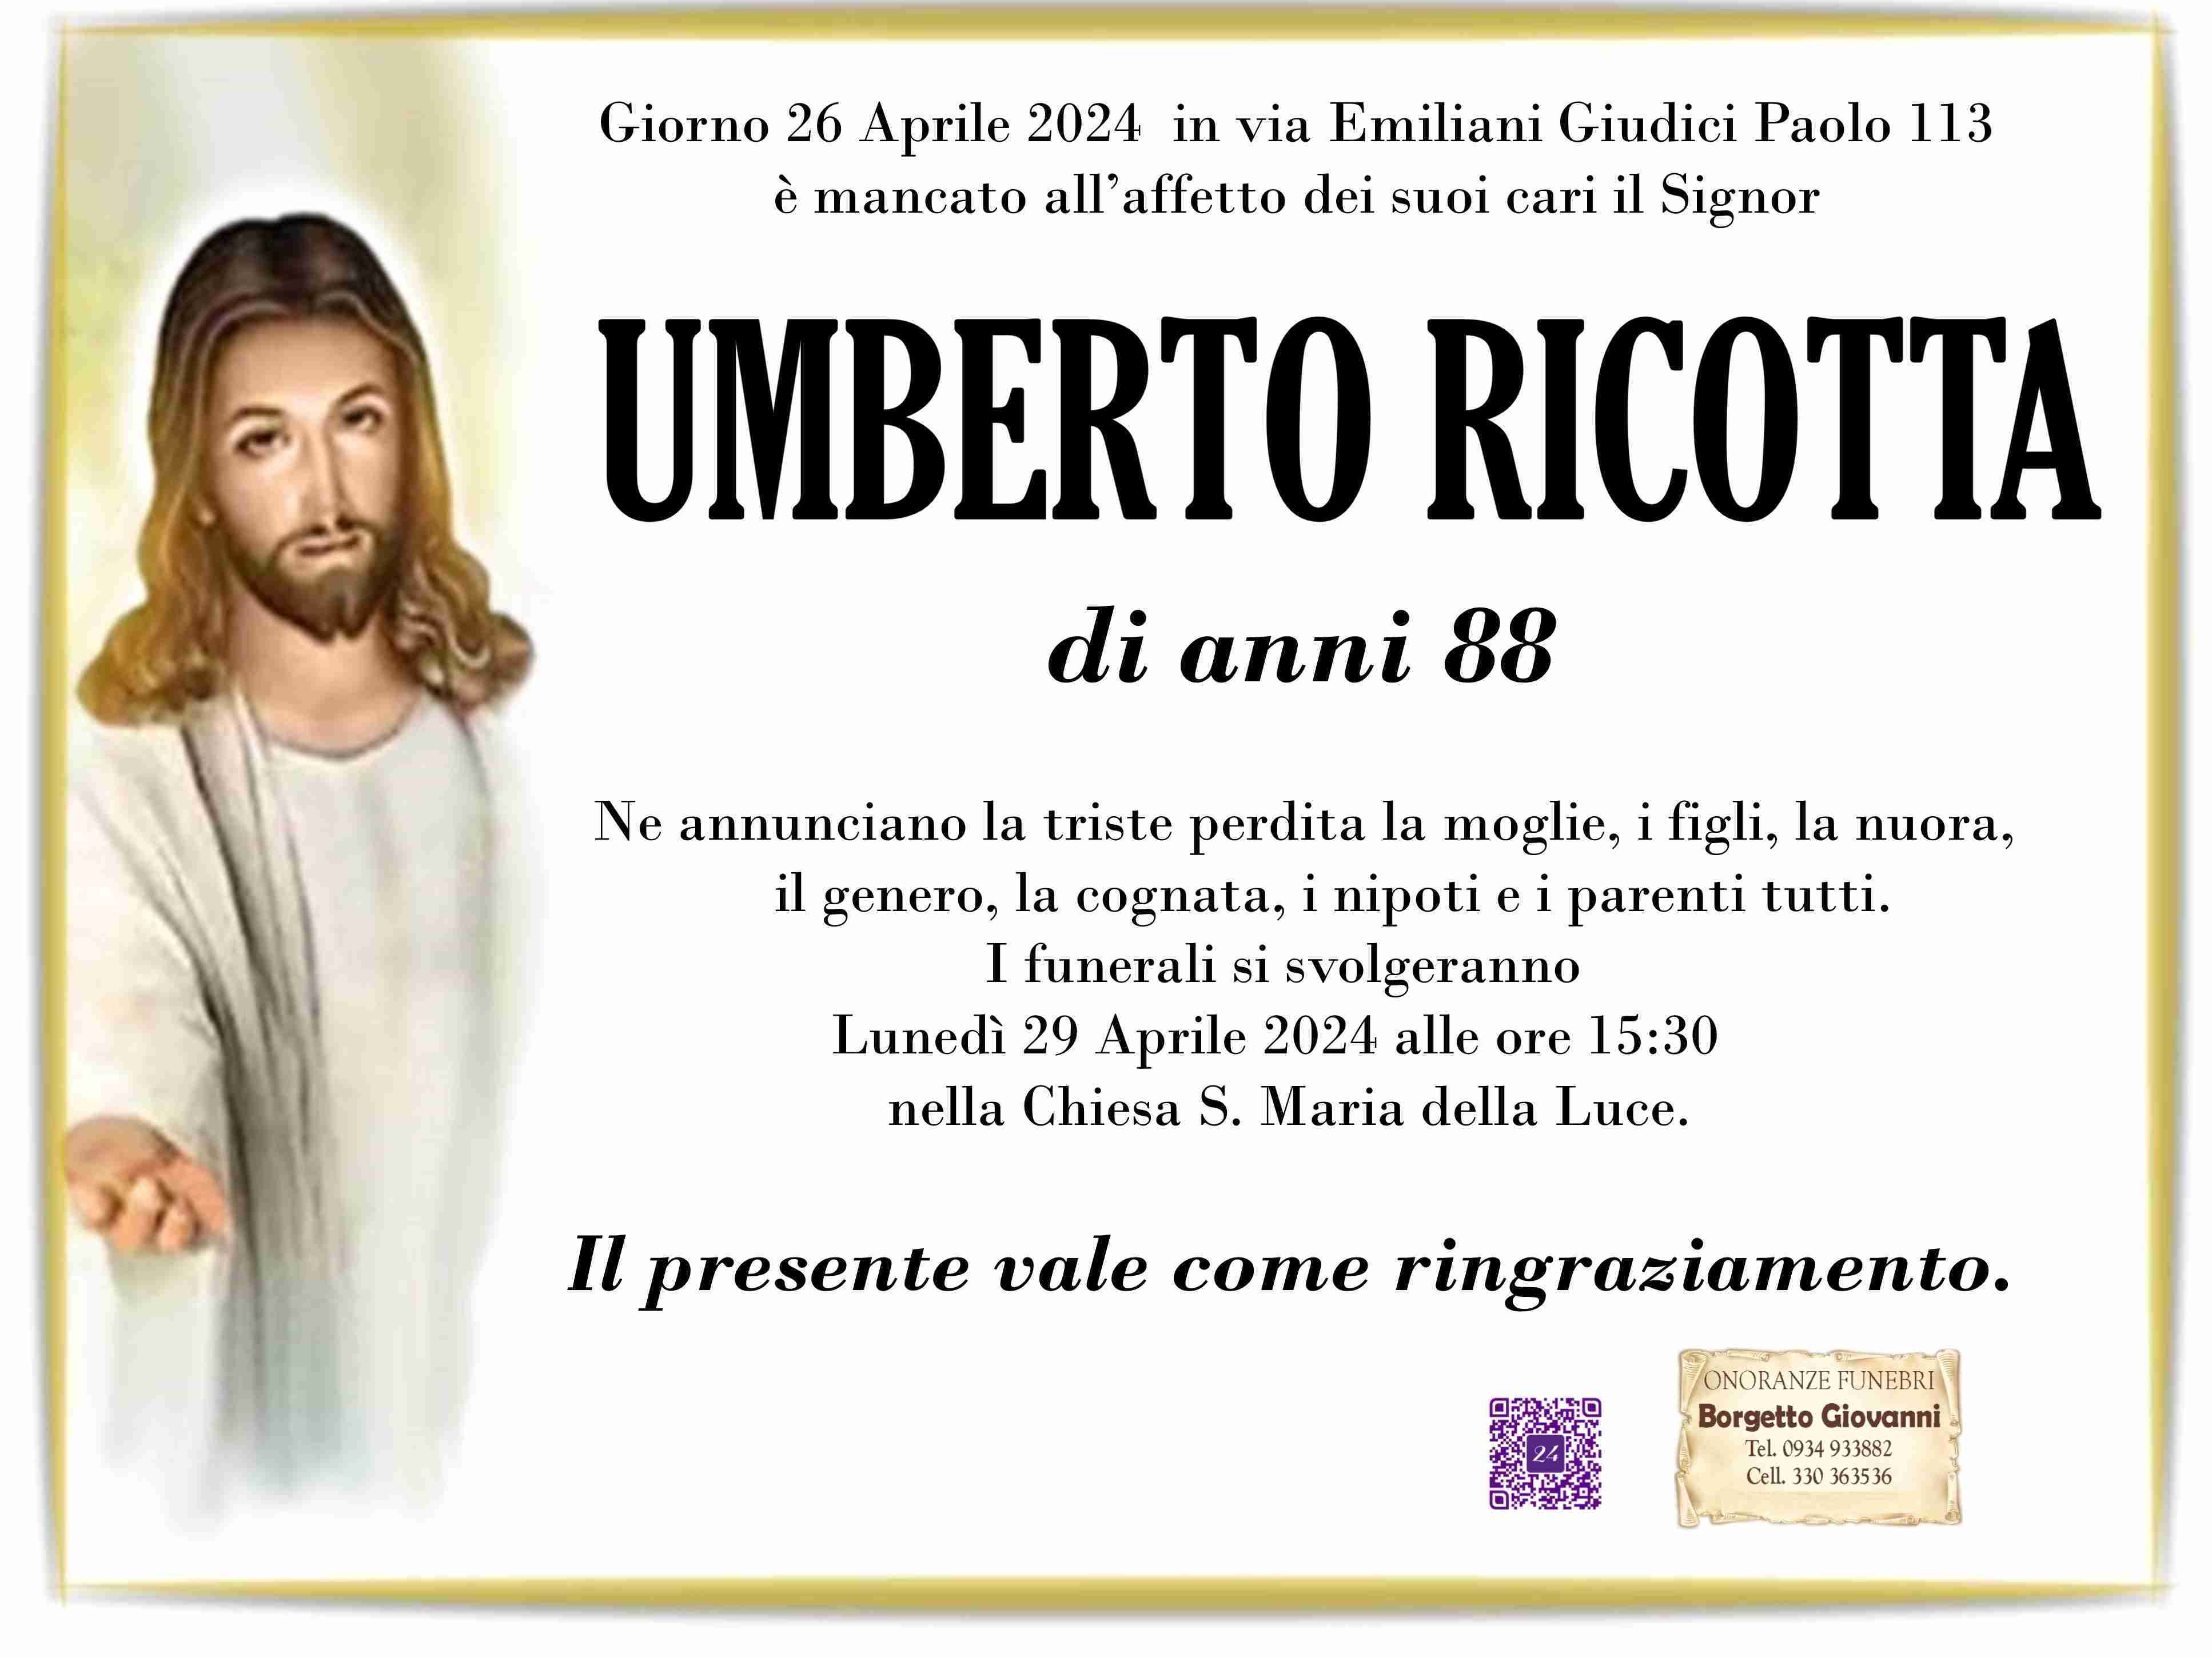 Umberto Ricotta